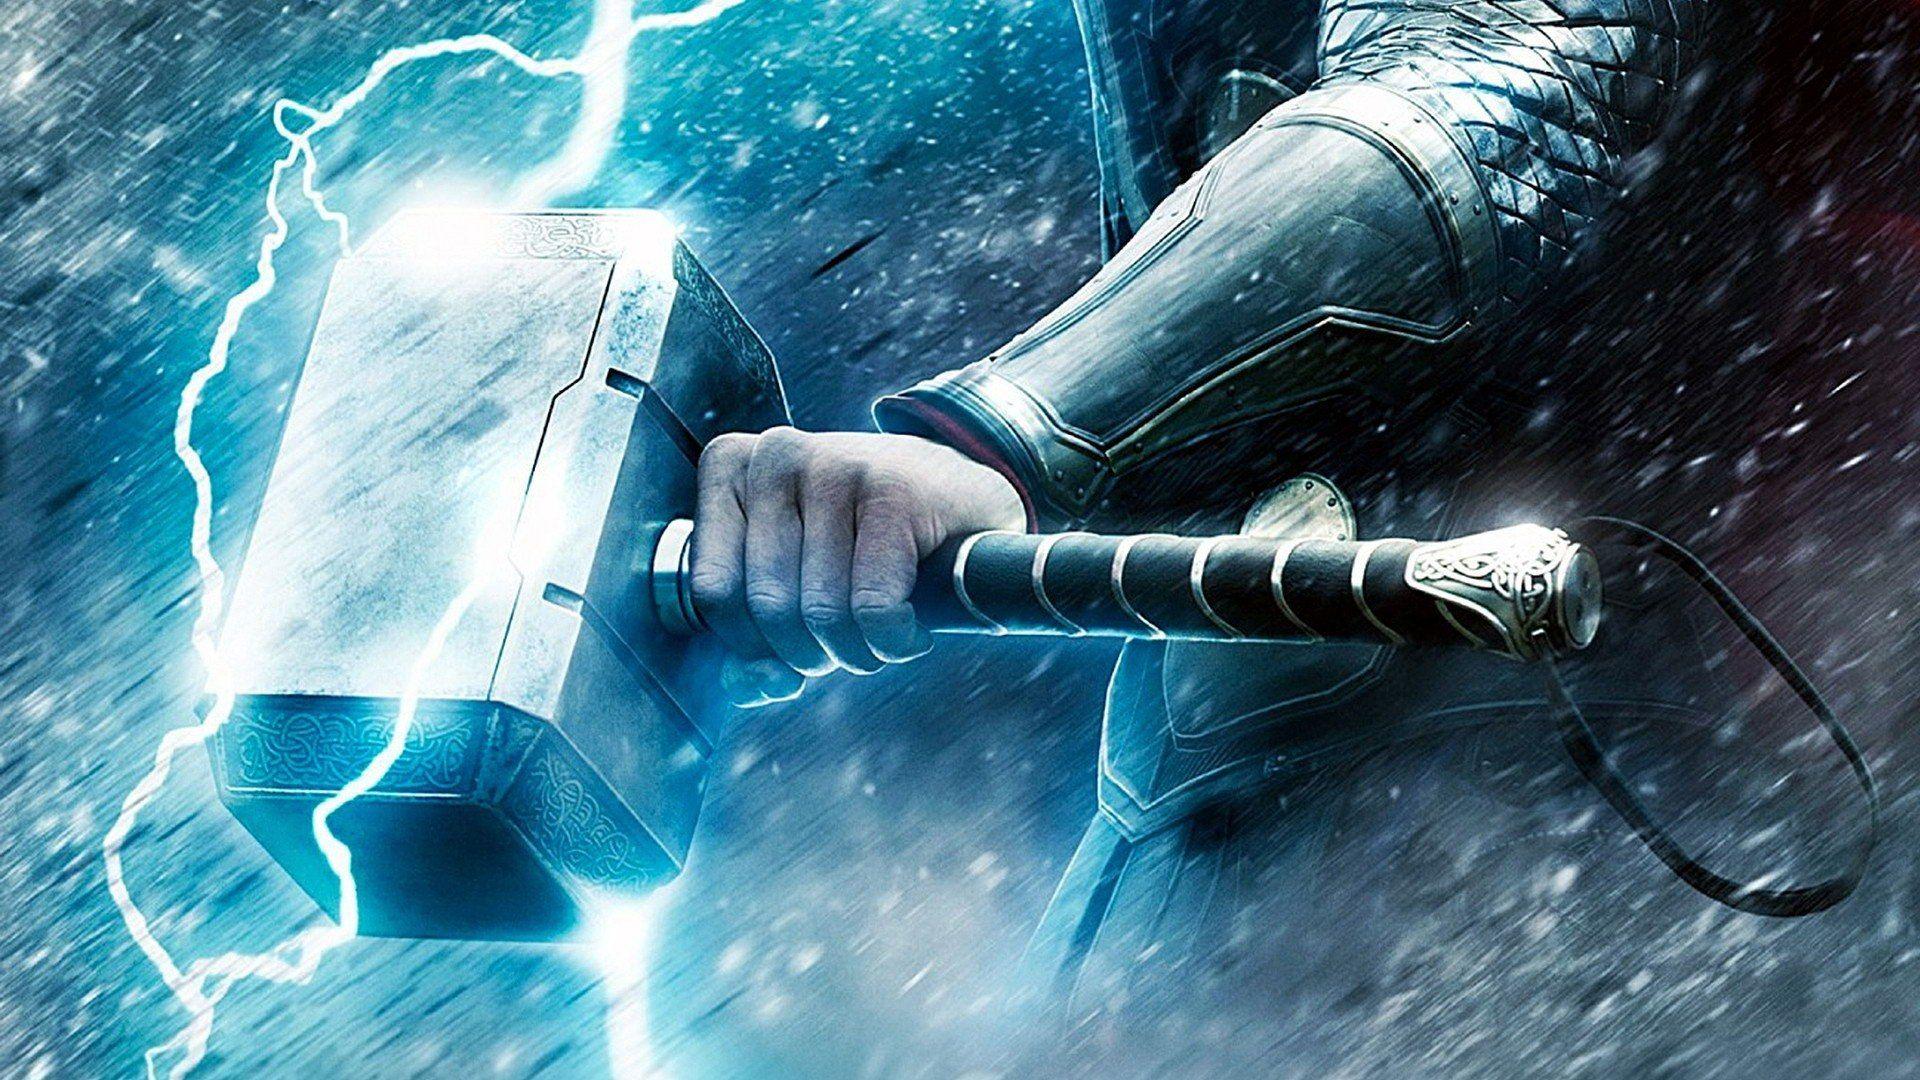 HD wallpaper: 4k, Thor: Ragnarok, Chris Hemsworth | Wallpaper Flare